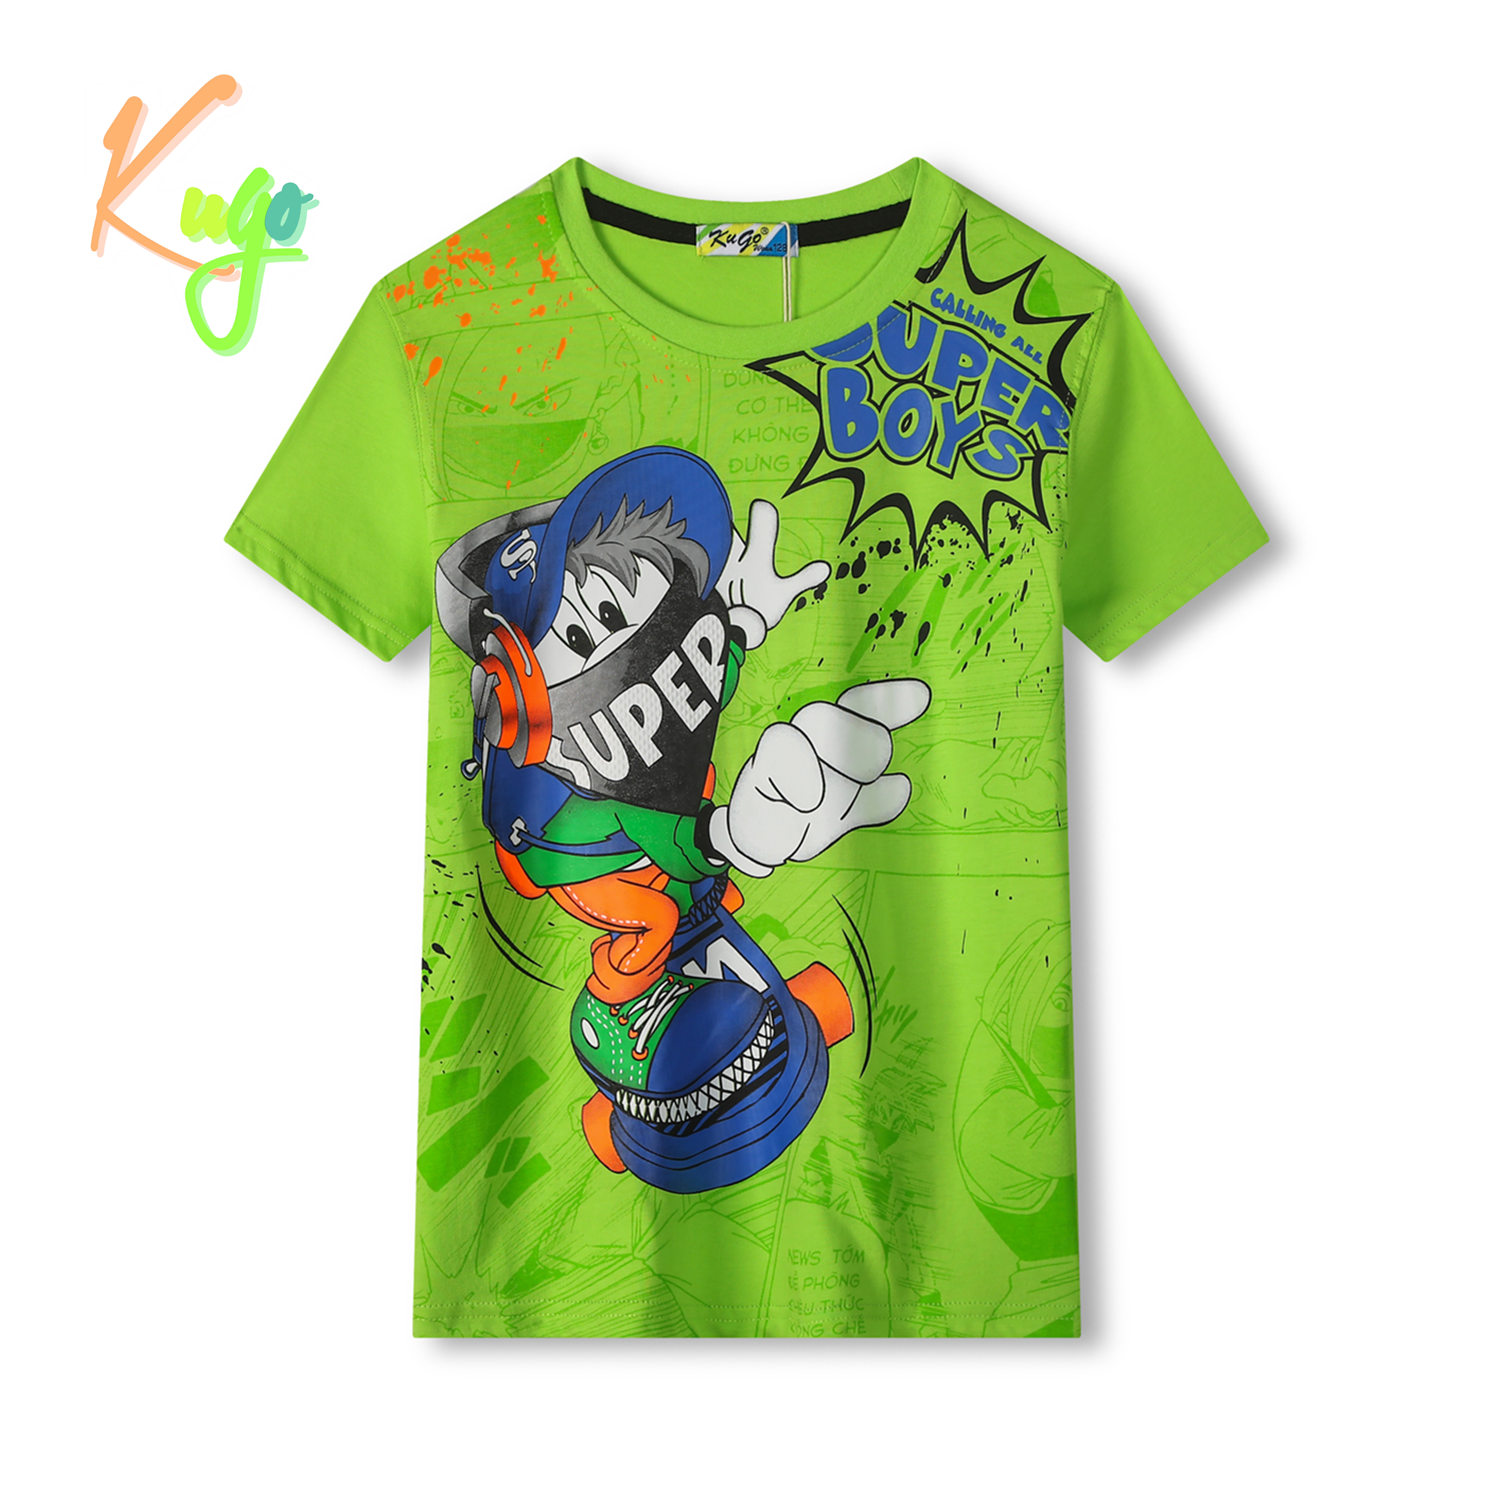 Chlapecké tričko - KUGO TM8575C, zelená Barva: Zelená, Velikost: 116